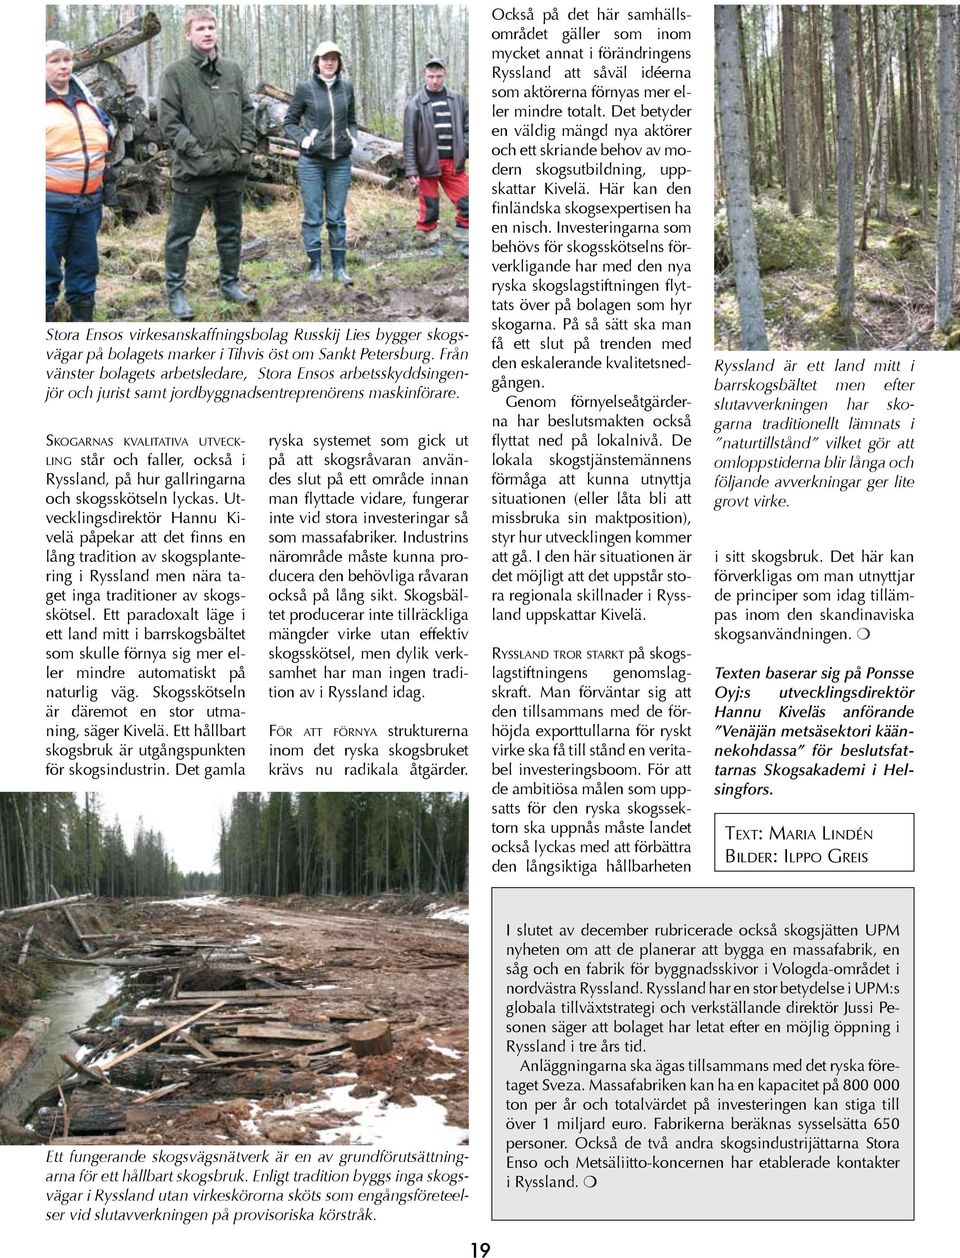 Skogarnas kvalitativa utveckling står och faller, också i Ryssland, på hur gallringarna och skogsskötseln lyckas.